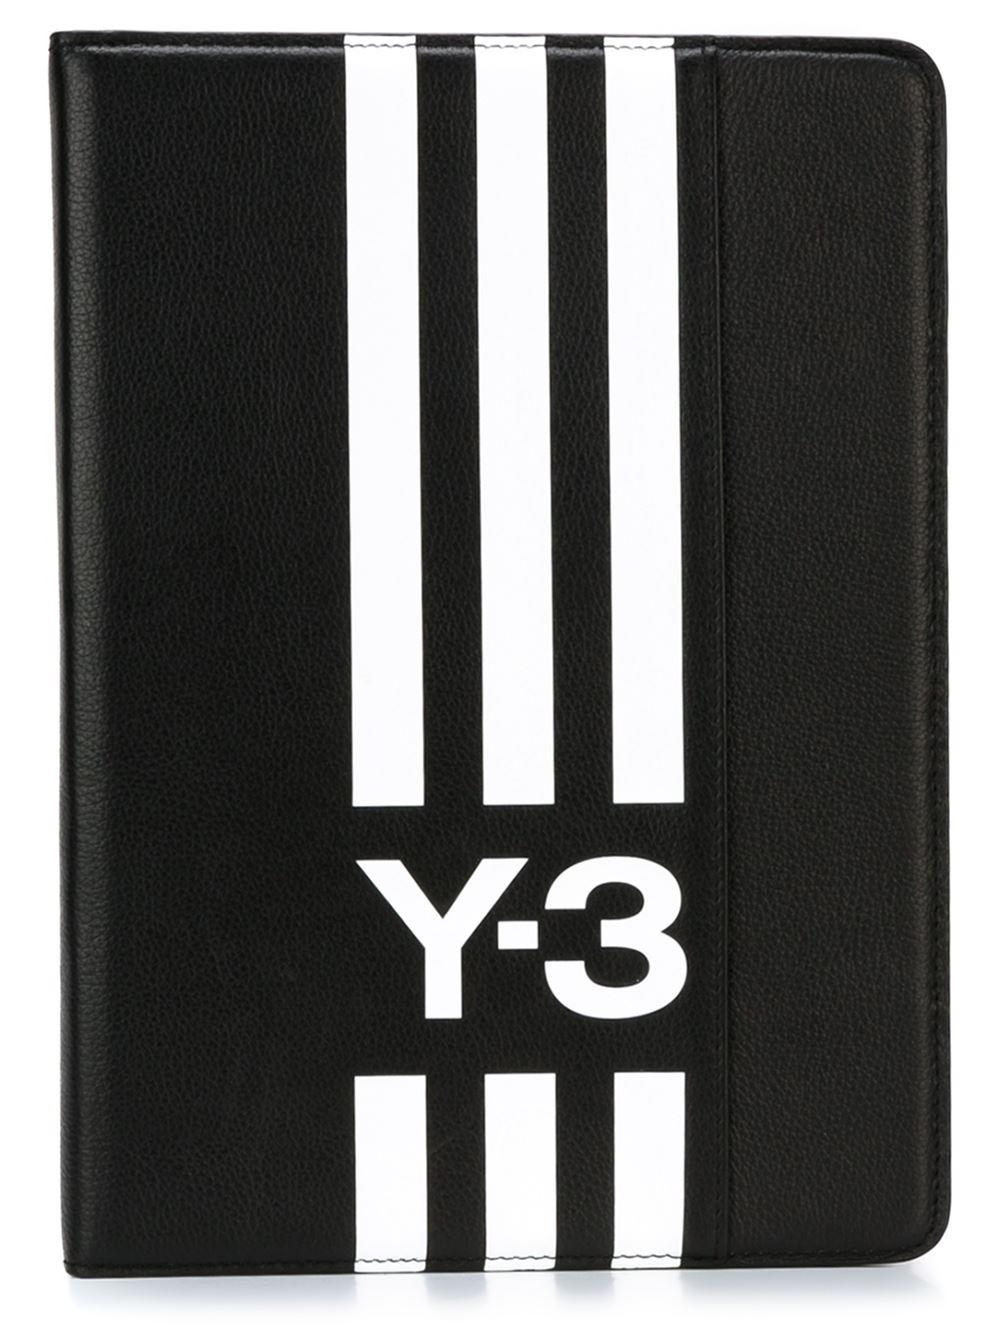 Y-3 Logo - y3 high top trainers, Y-3 logo iPad Air case Black/White Women ...